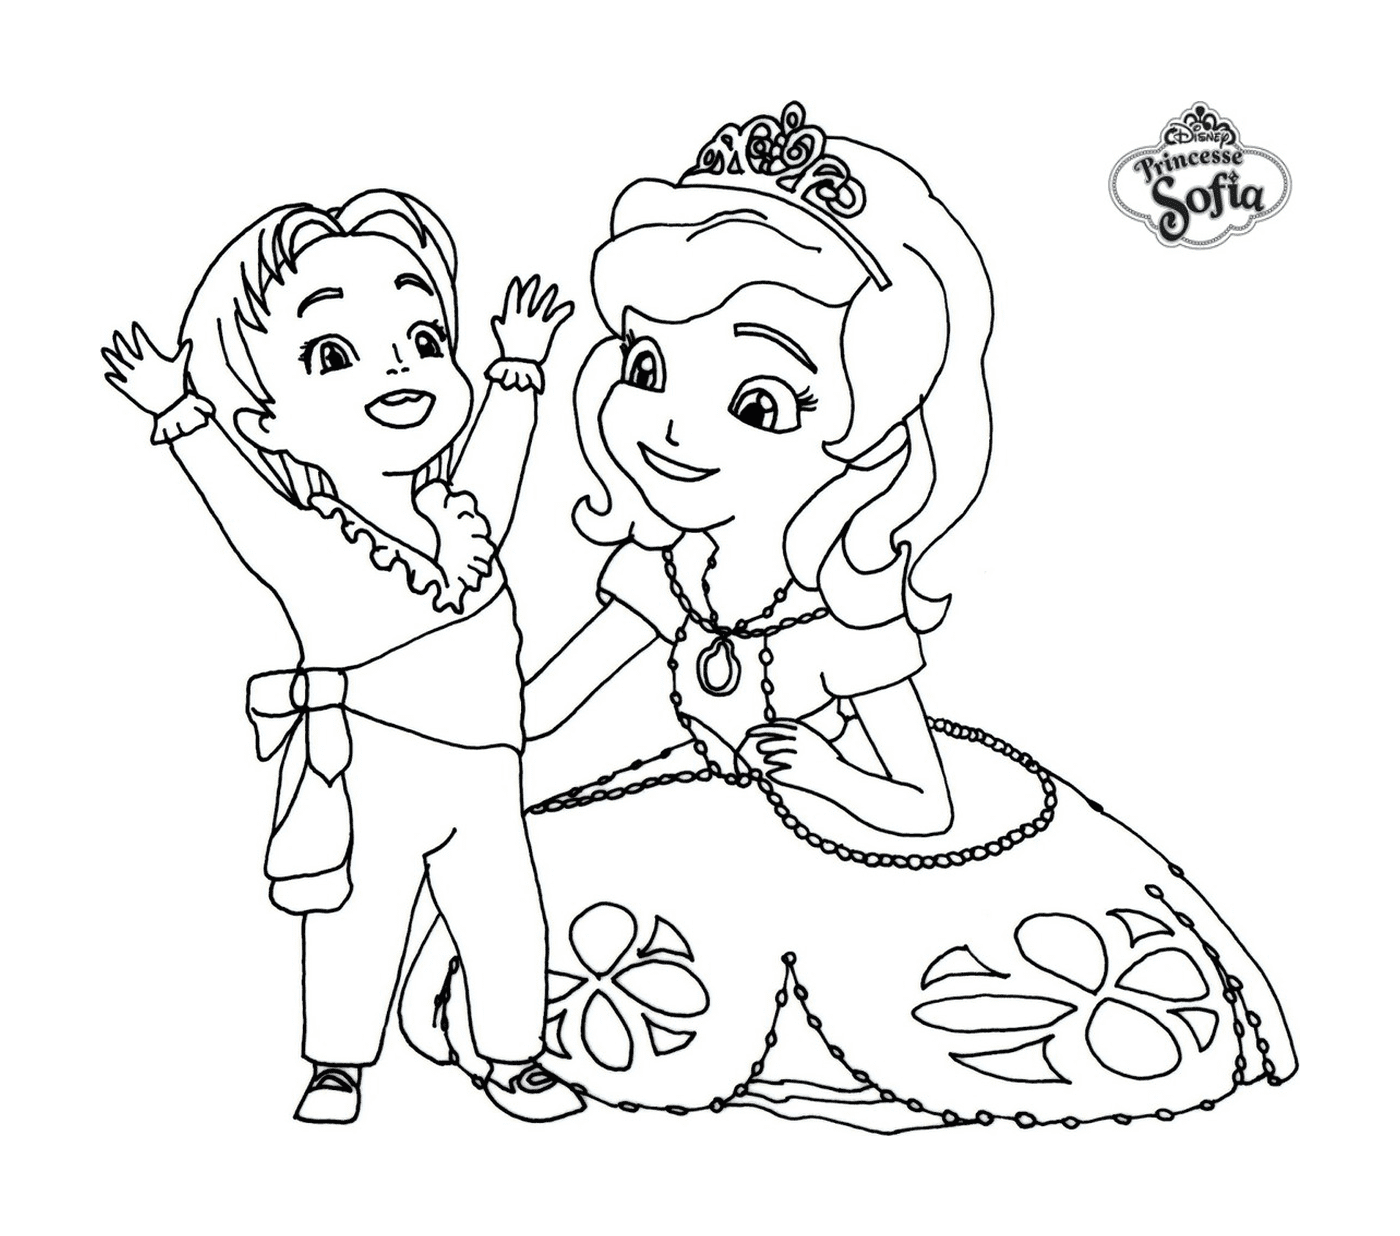  Princesa Sofia da Disney com um filho 